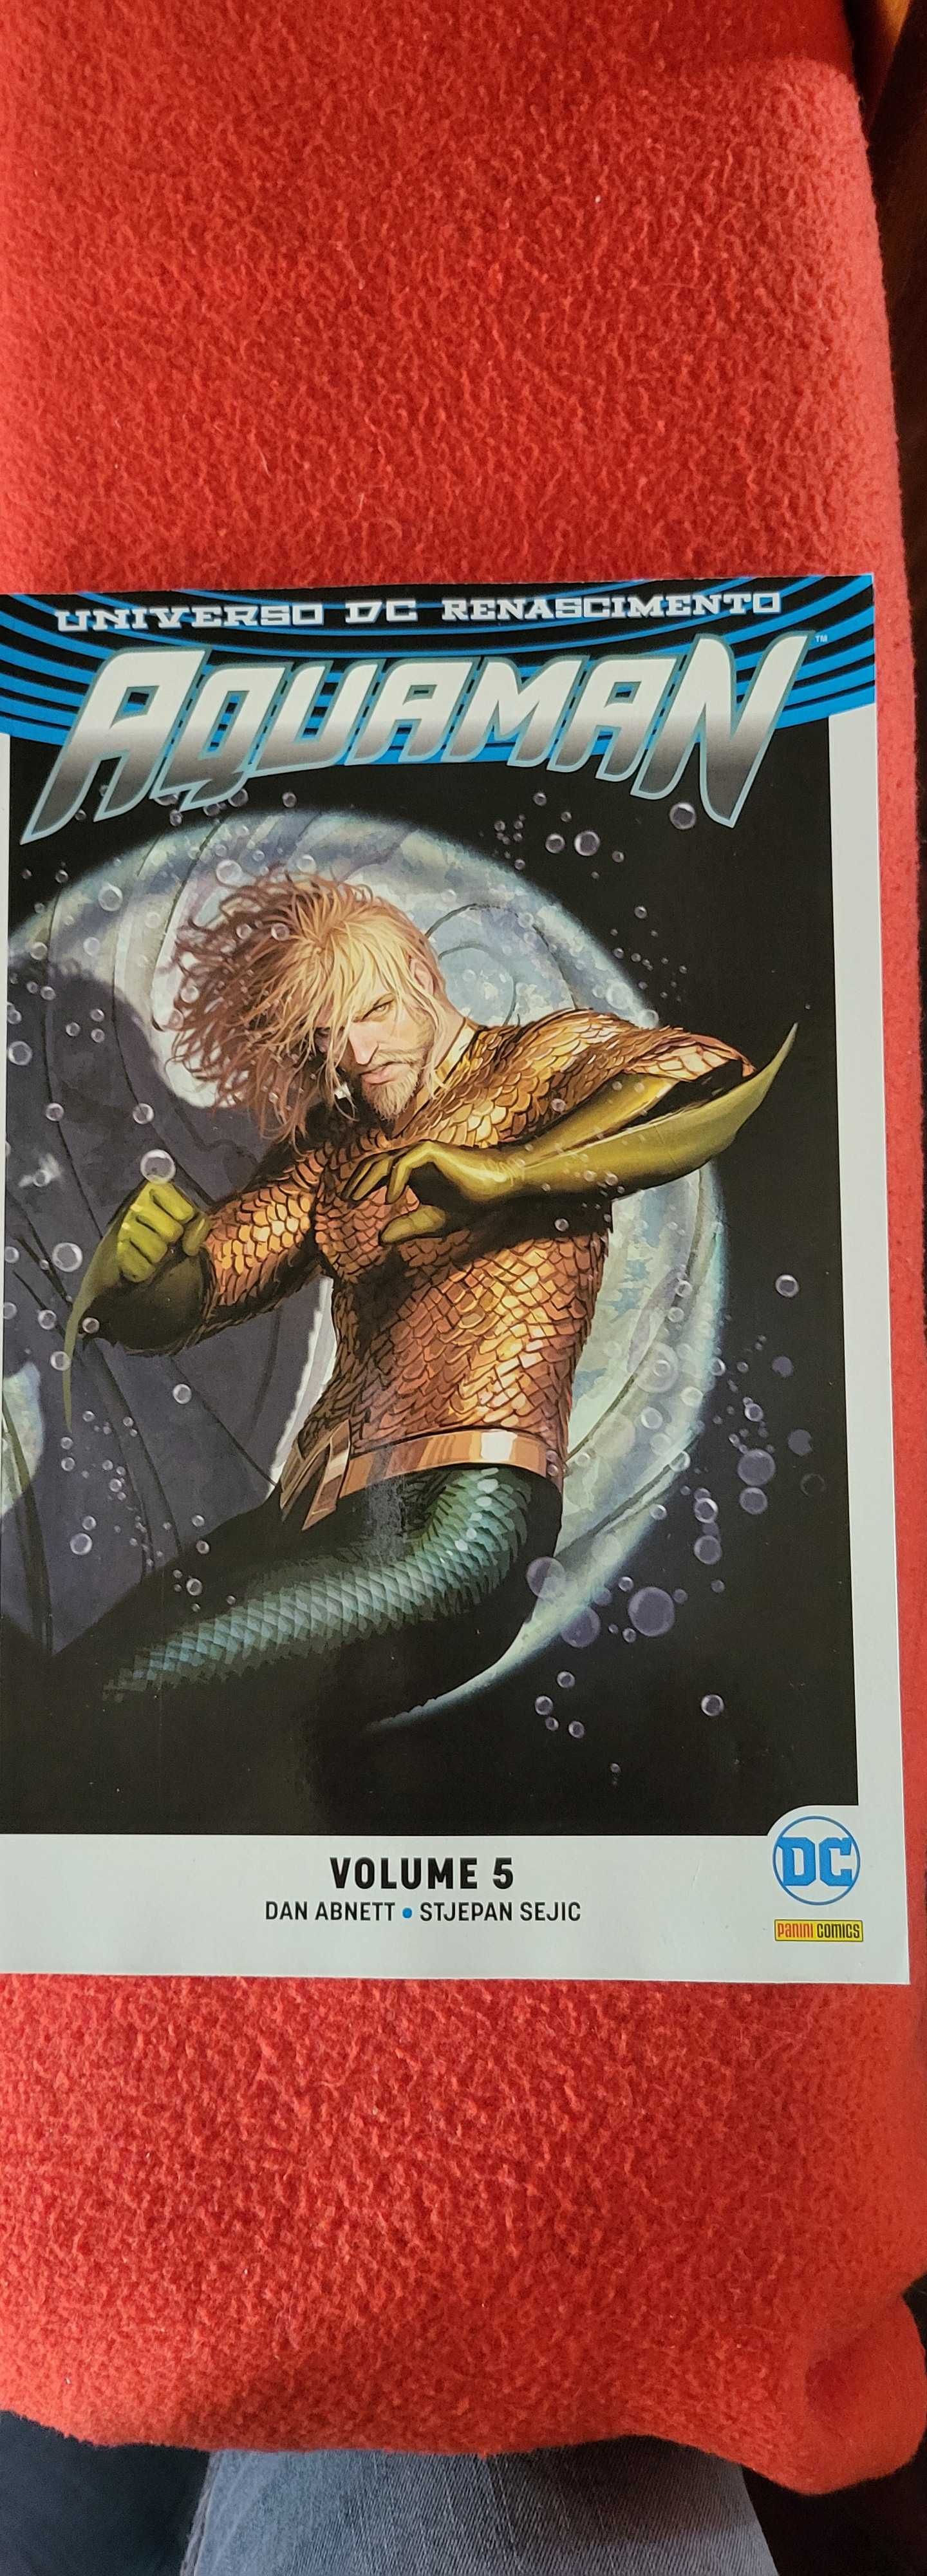 Aquaman volume 5